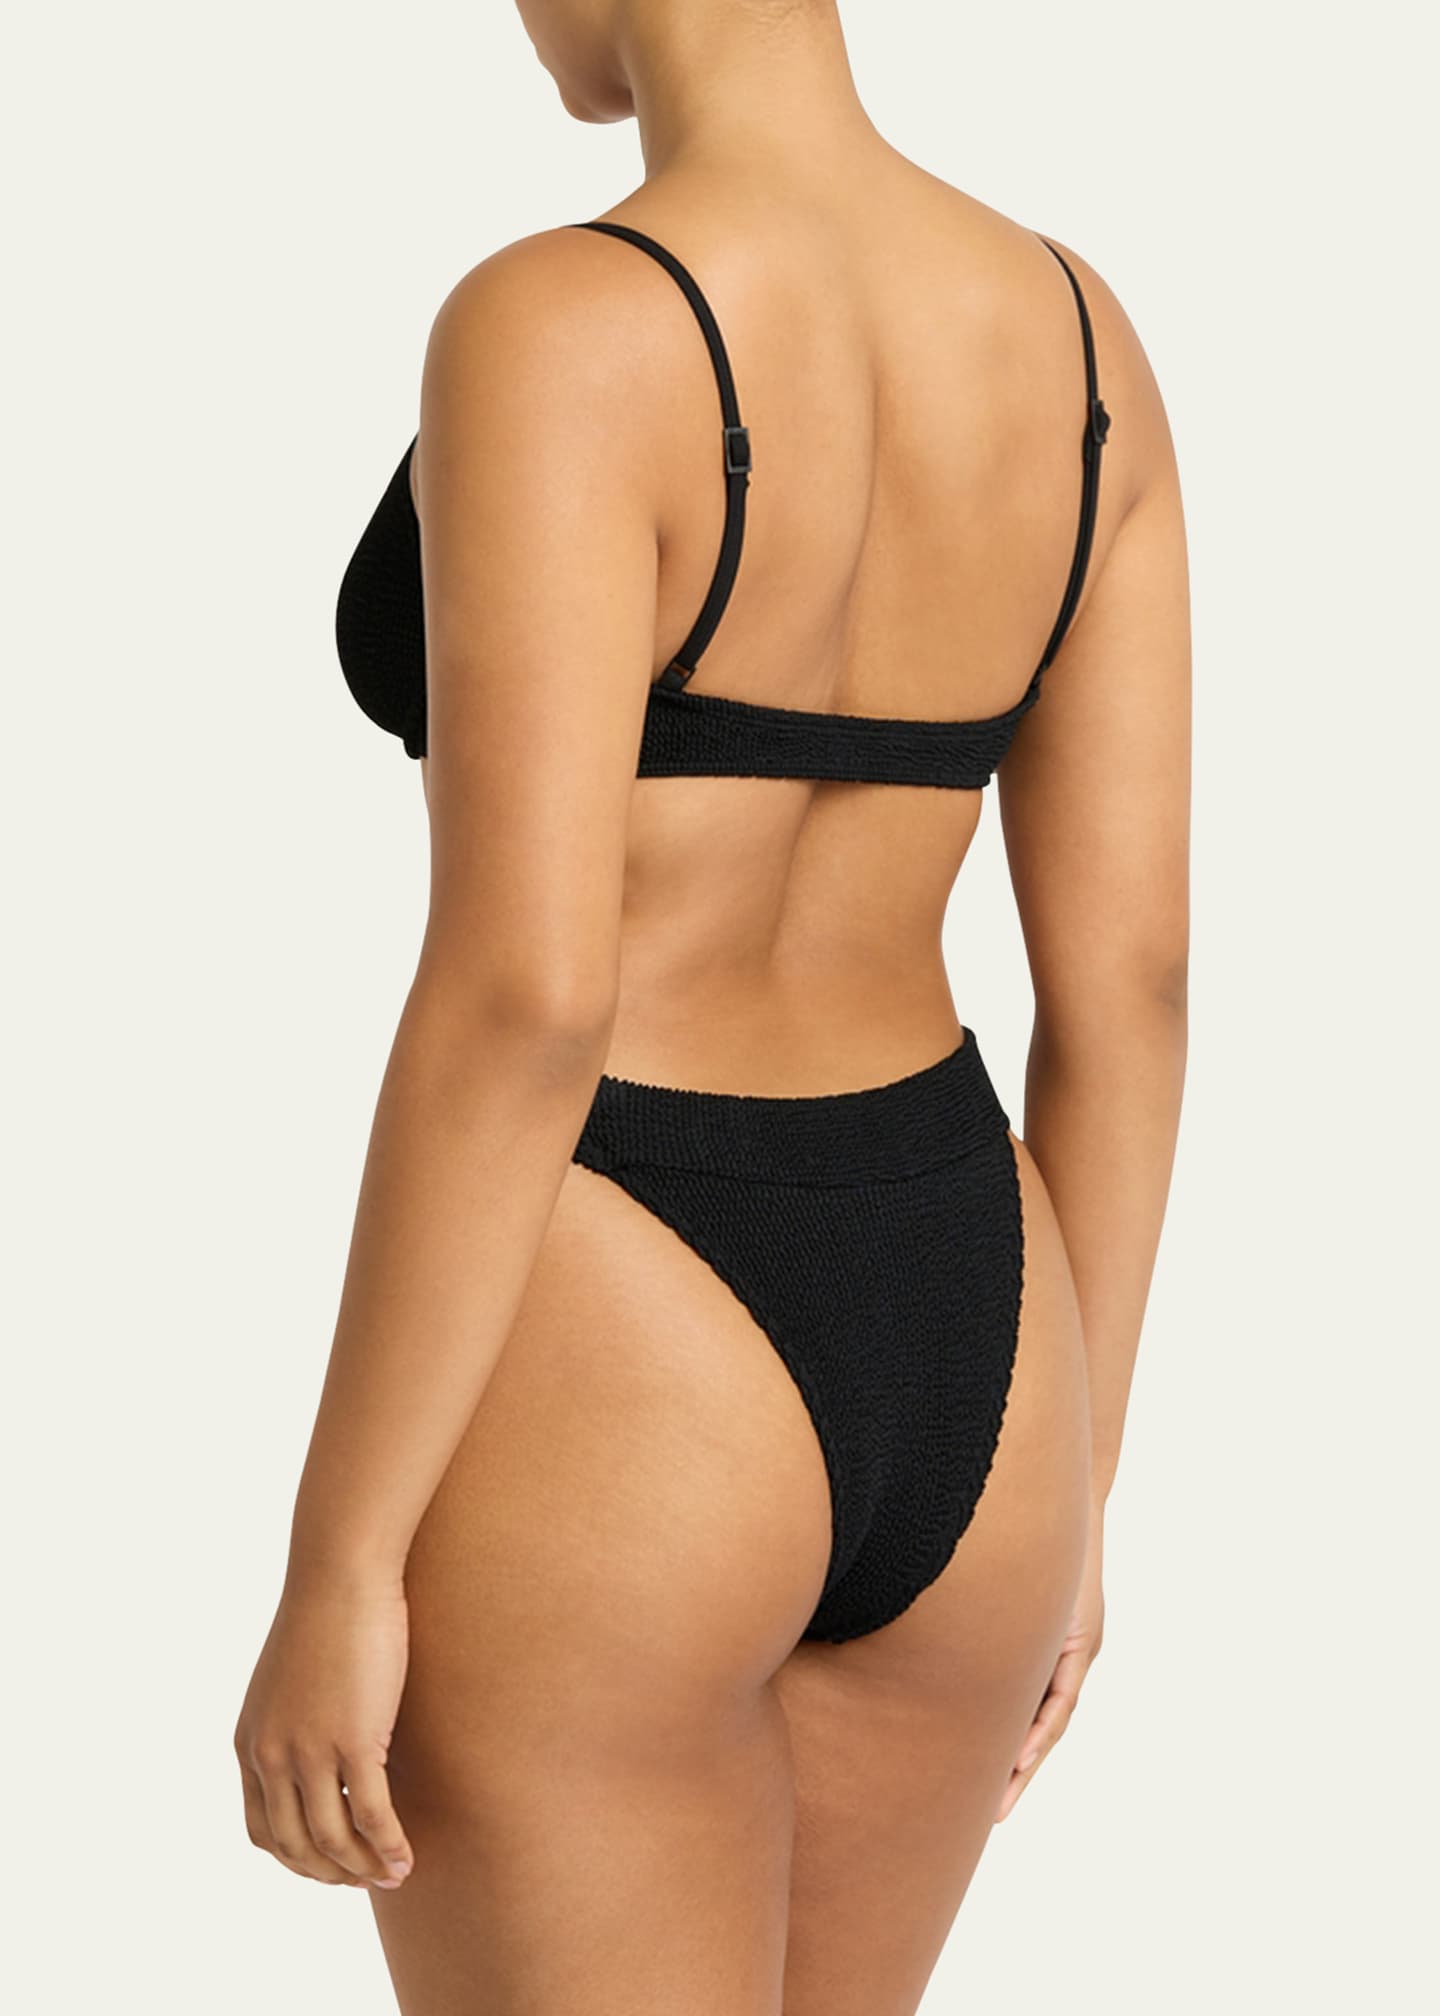 bond-eye swim Gracie Balconette Bikini Top